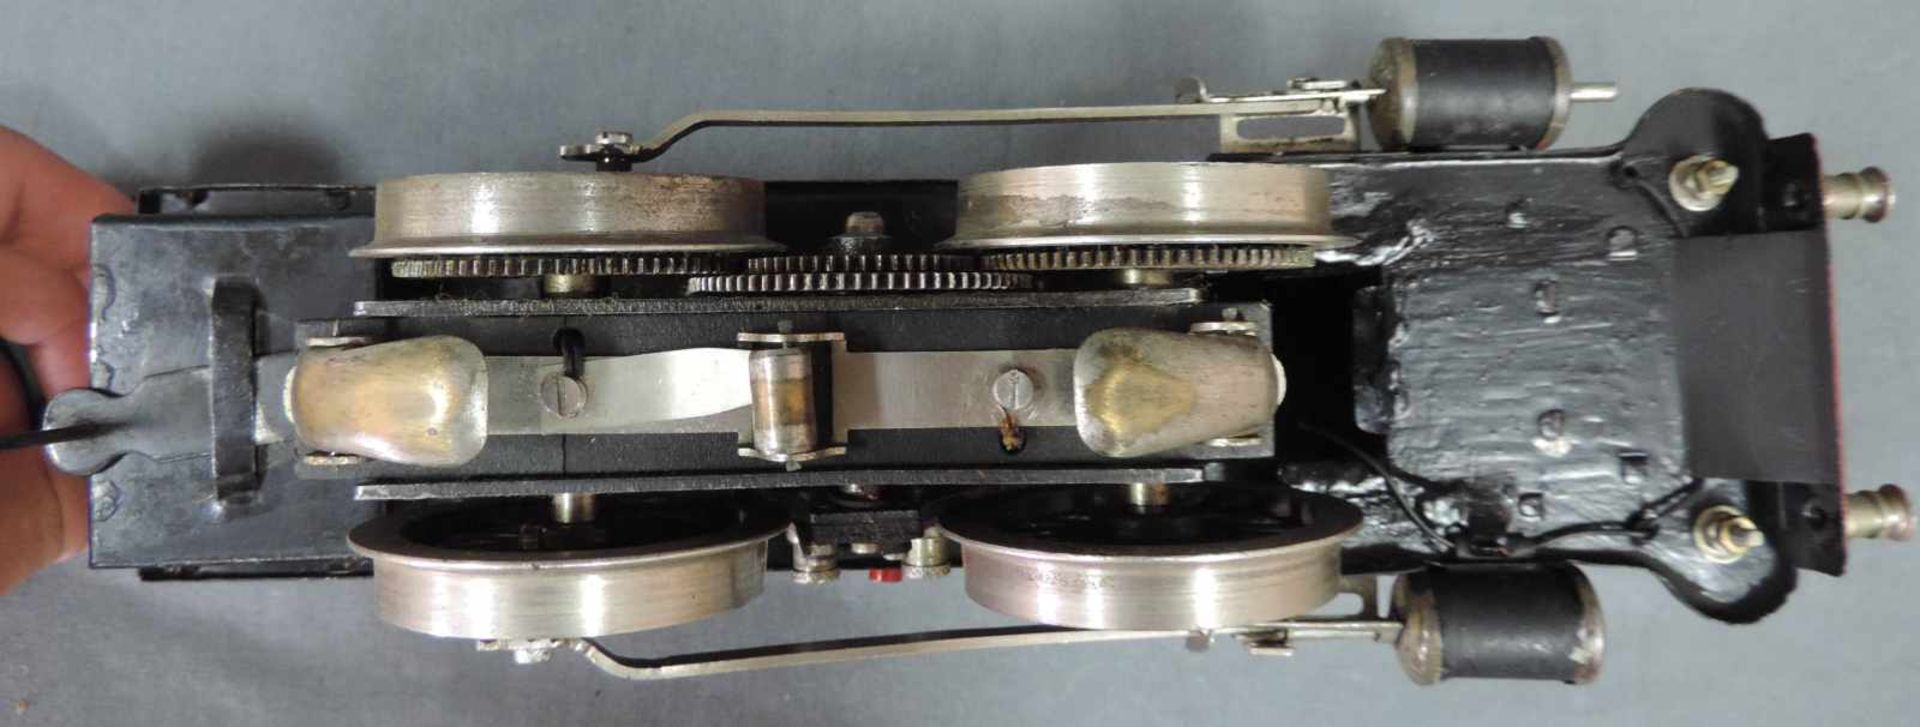 Modell Lokomotive. Märklin. "R 13041" Spur 1 27 cm x 10 cm. Modell Dampflock "R 13041" von Märklin - Bild 8 aus 8